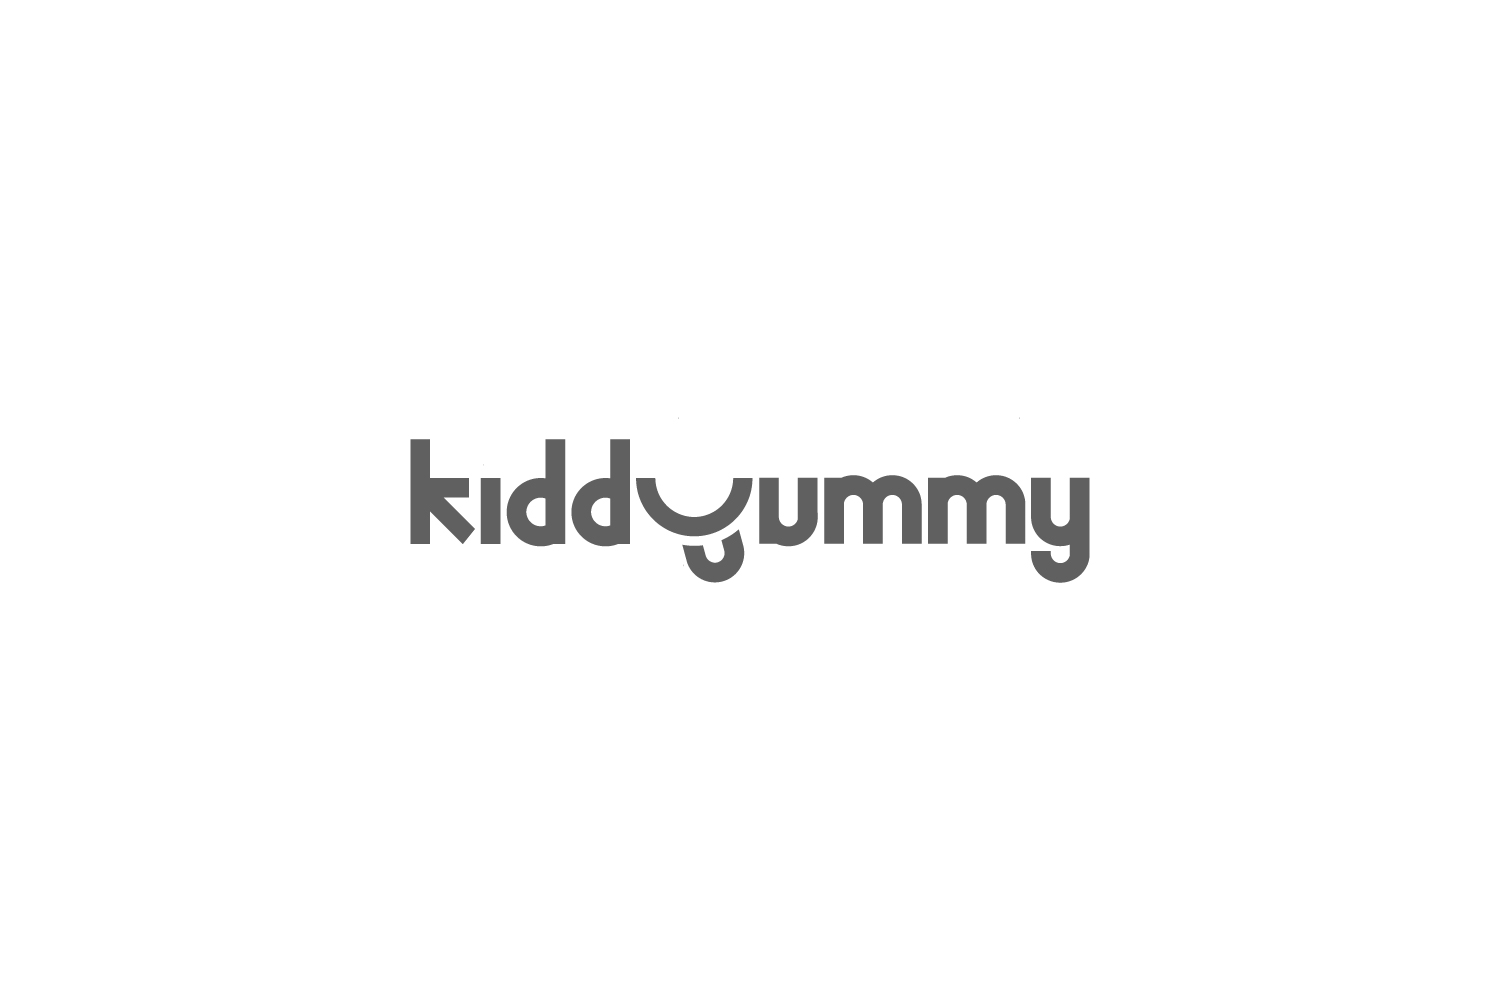 Kiddyummy logo on white background